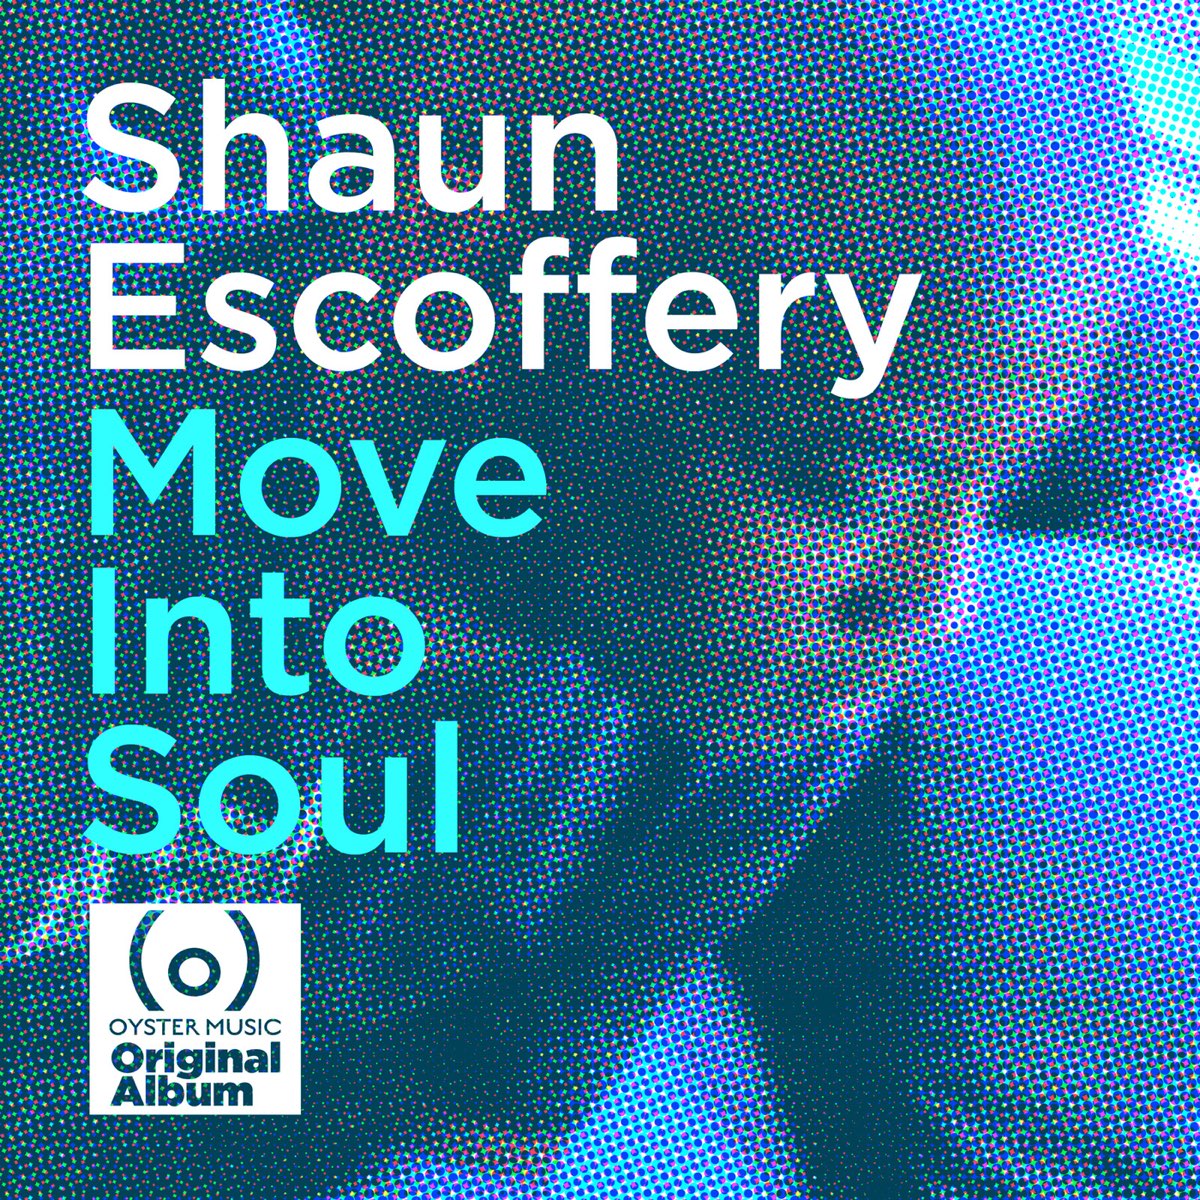 Move Into Soul par Shaun Escoffery sur Apple Music